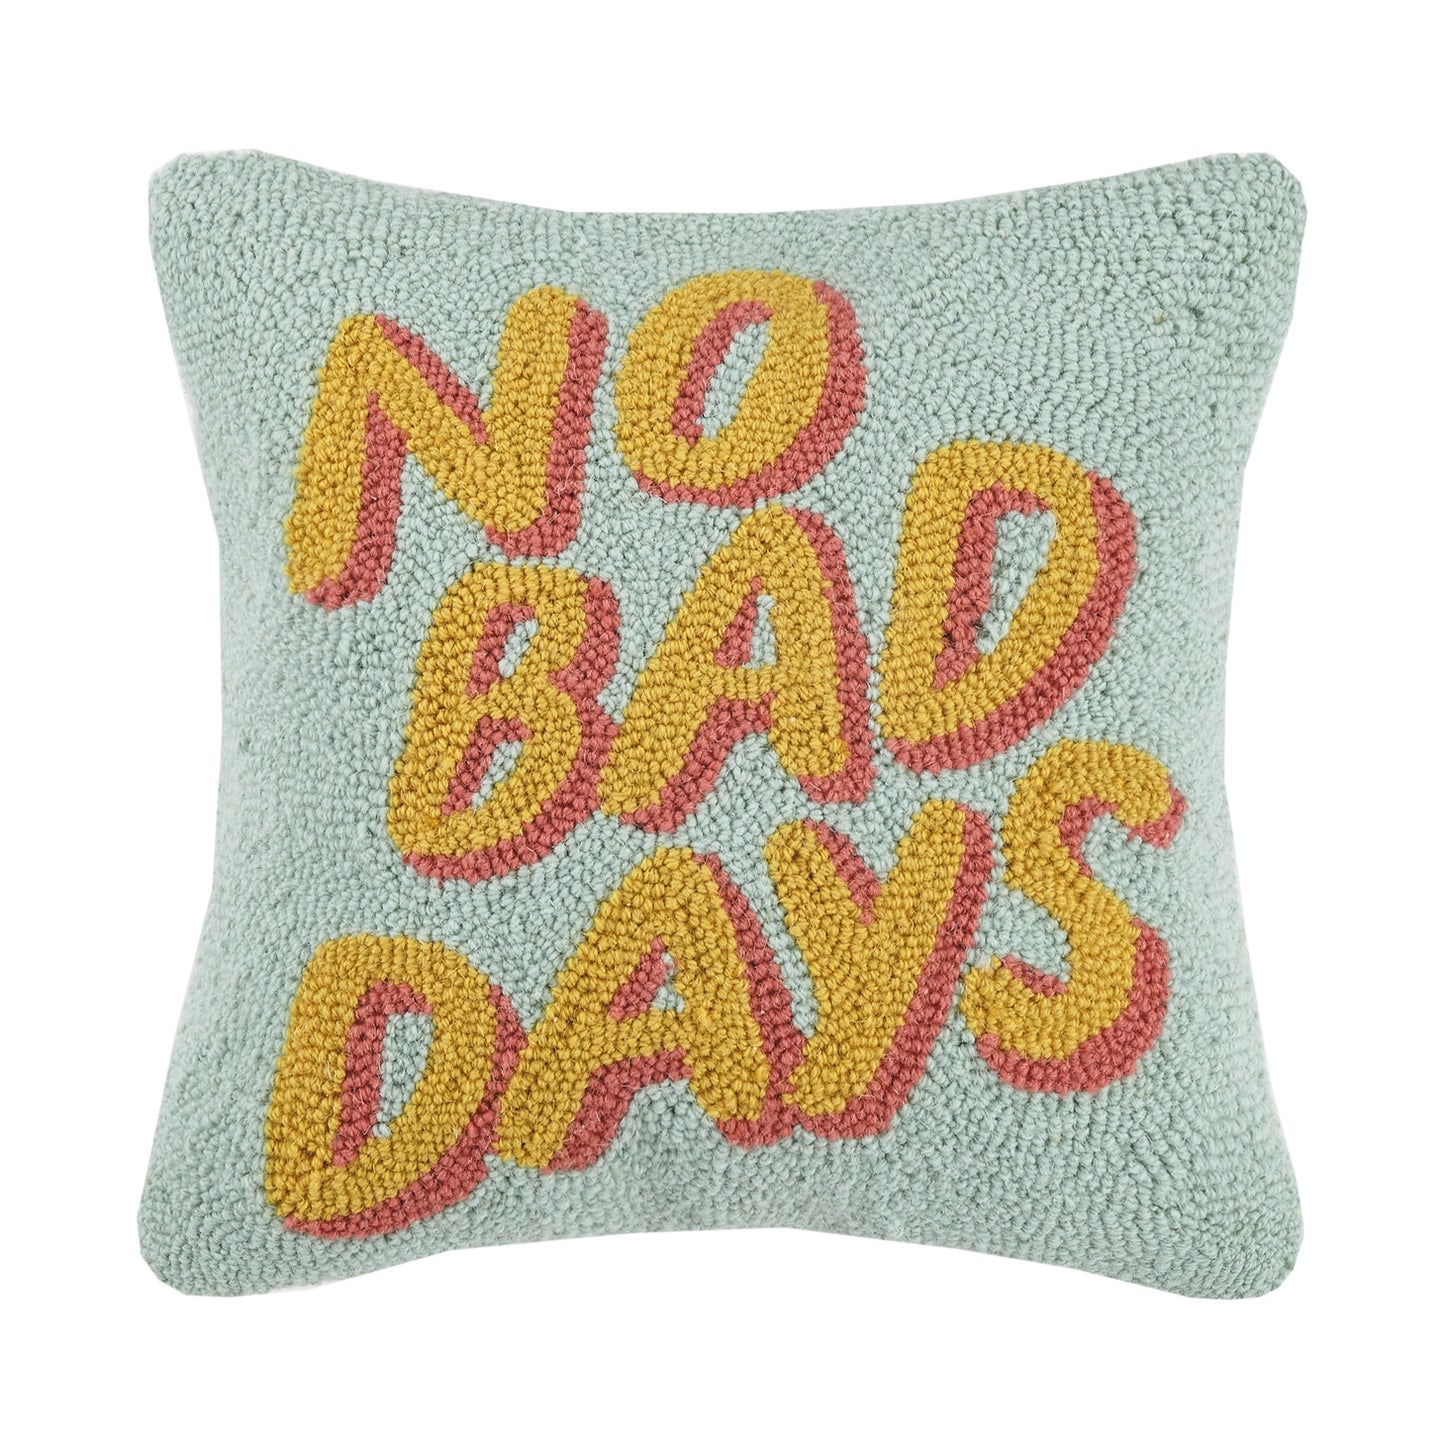 No Bad Days throw pillow